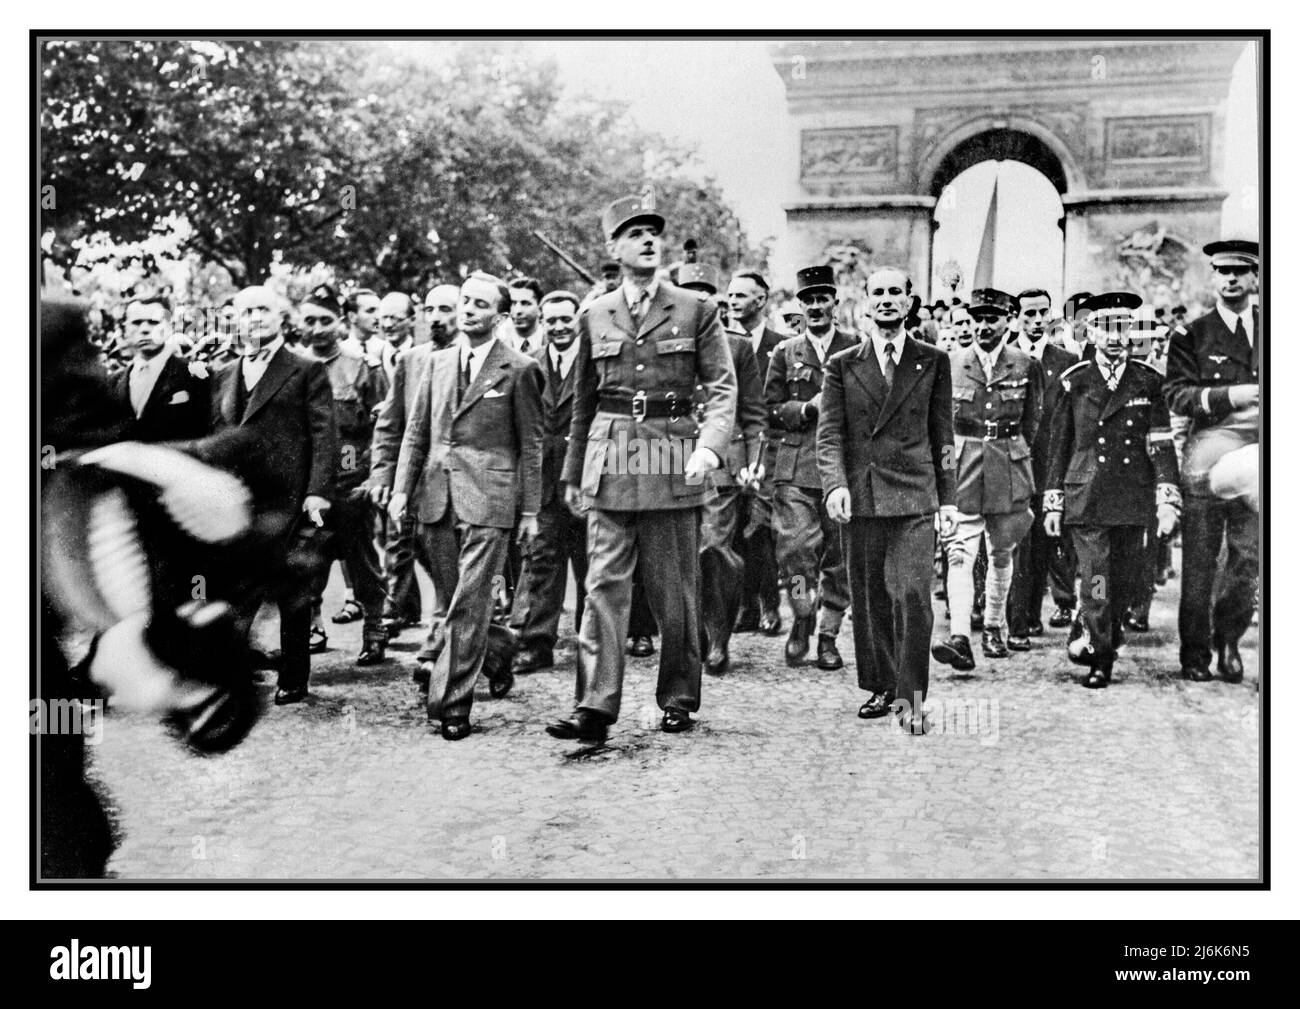 Die Befreiung von Paris, 25. - 26. August 1944 WW2 VE Day General Charles de Gaulle und sein Gefolge von Würdenträgern begaben sich vom Triumphbogen über die Champs Elysees nach Notre Dame für einen Dankesdienst nach der Befreiung der Stadt im August 1944. Restauriert und verbessert, um Originalqualität zu zeigen) Stockfoto